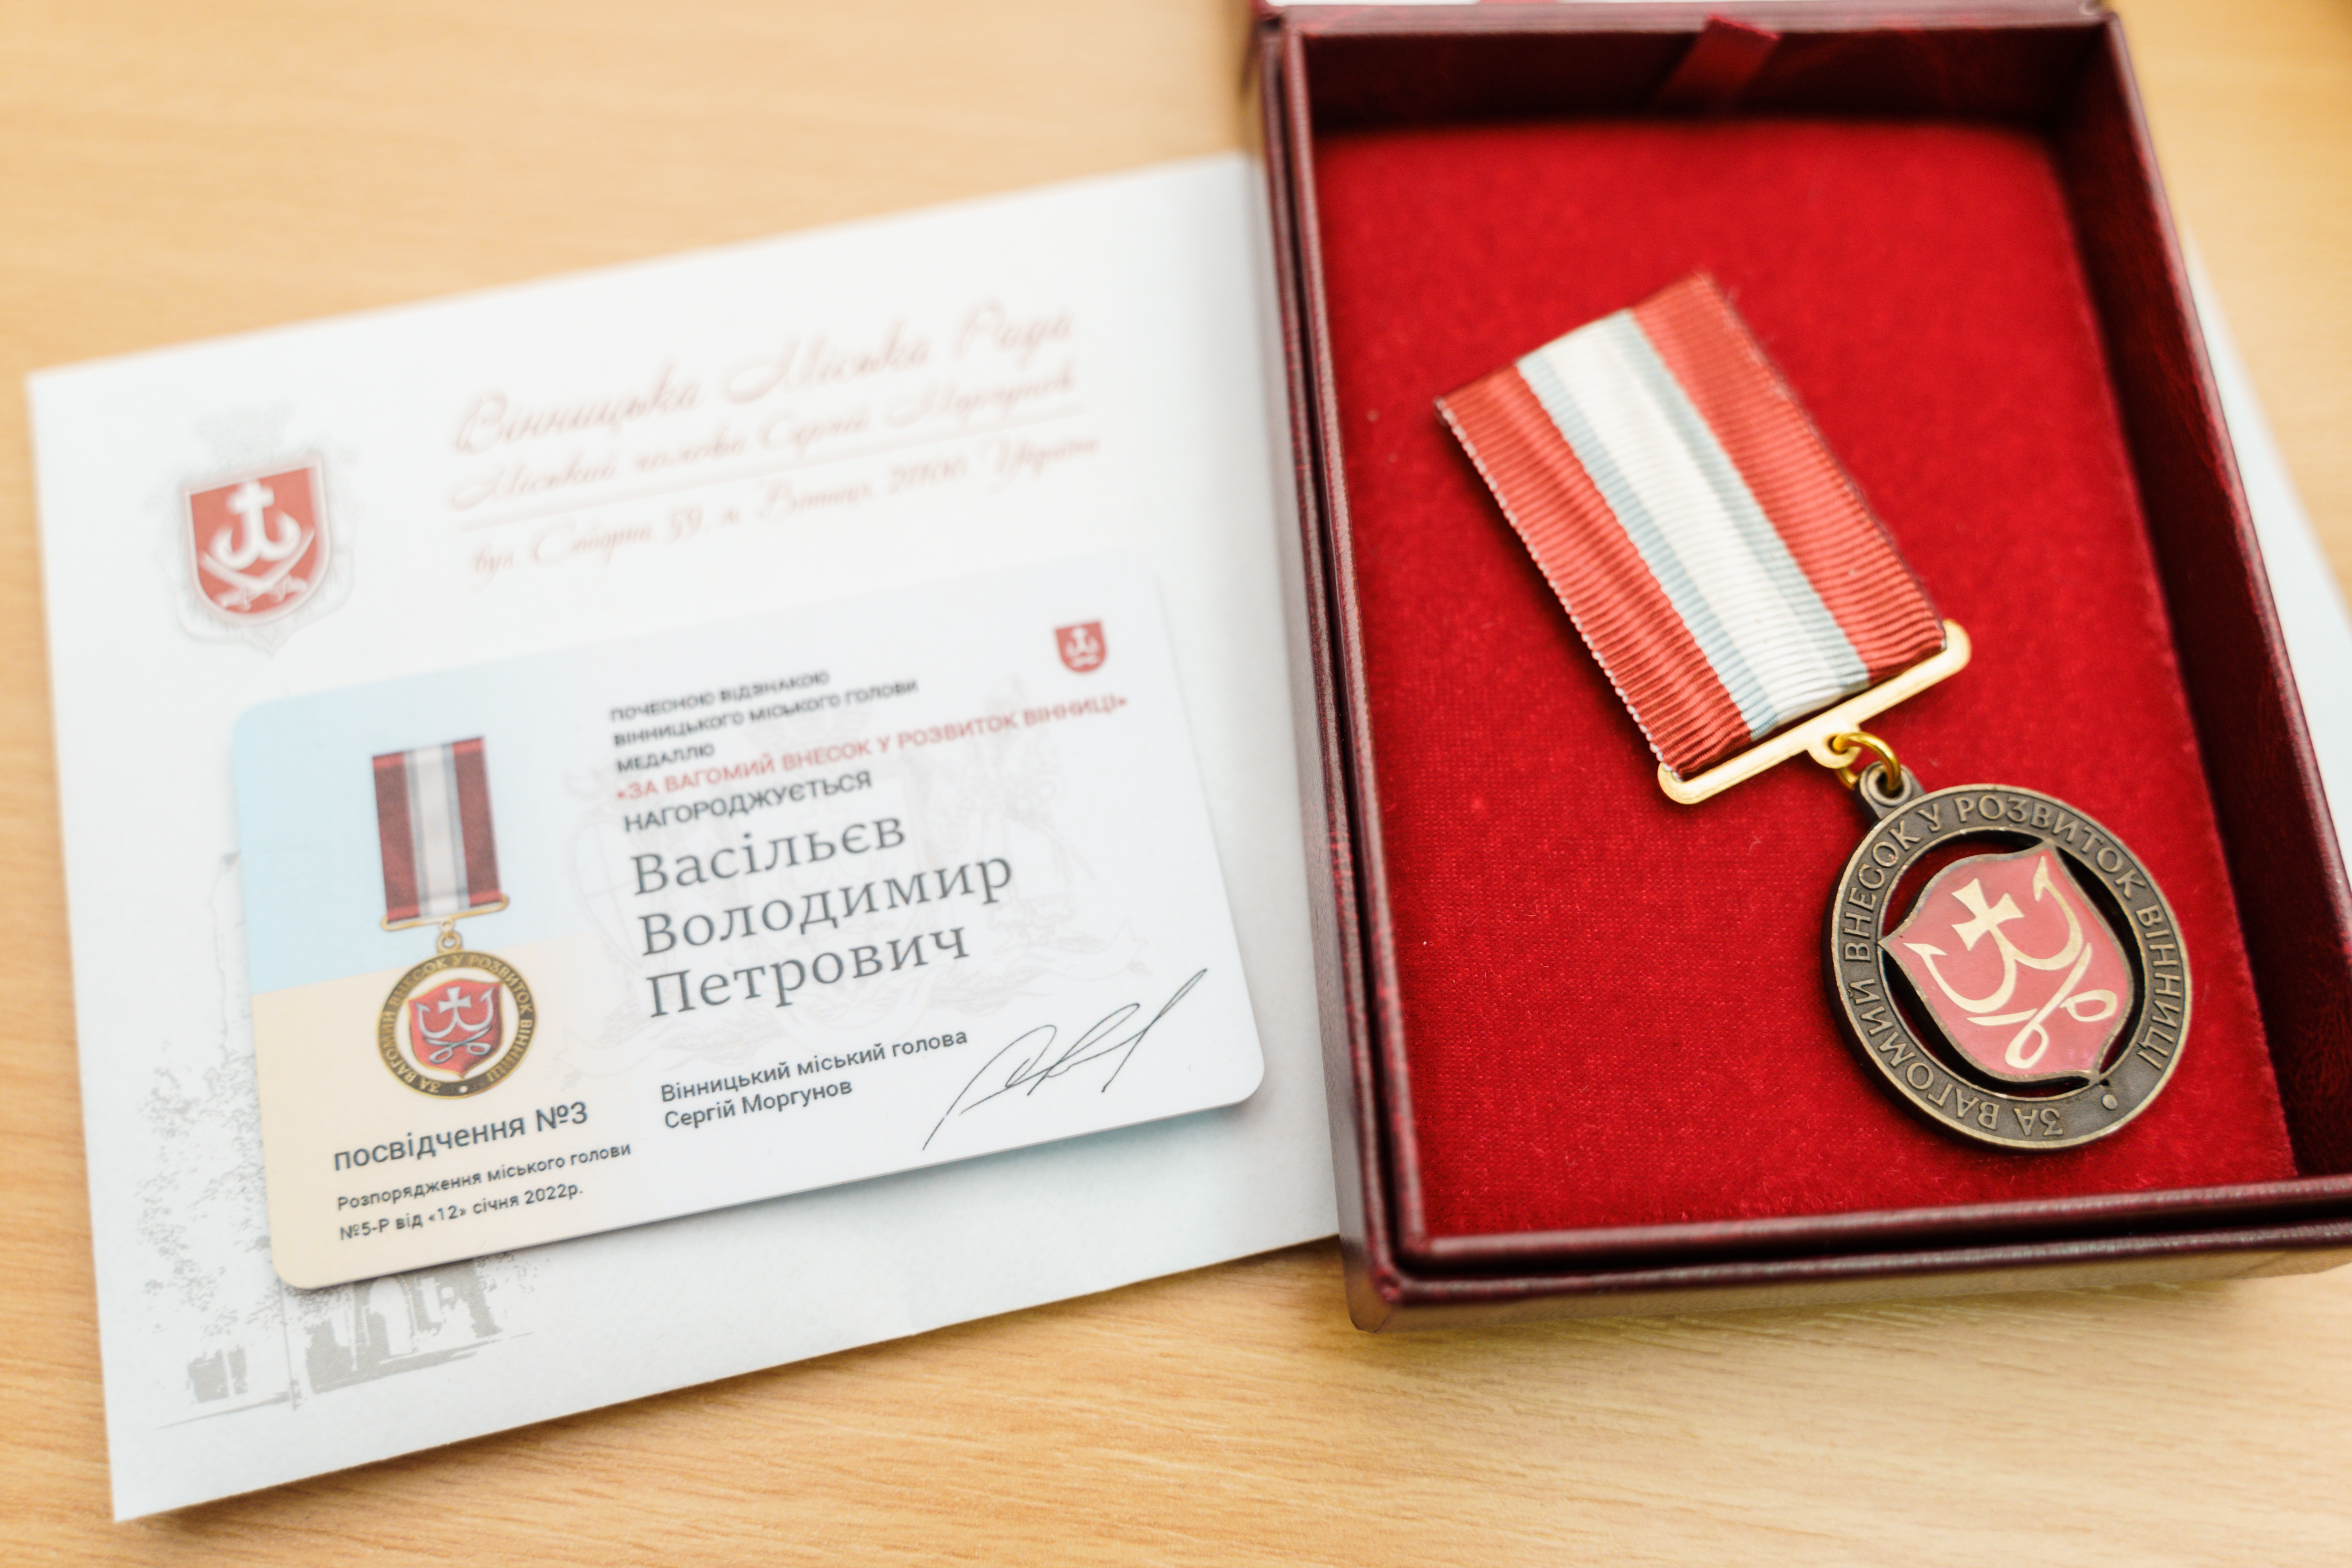 Володимиру Васільєву вручили медаль “За вагомий внесок у розвиток Вінниці”